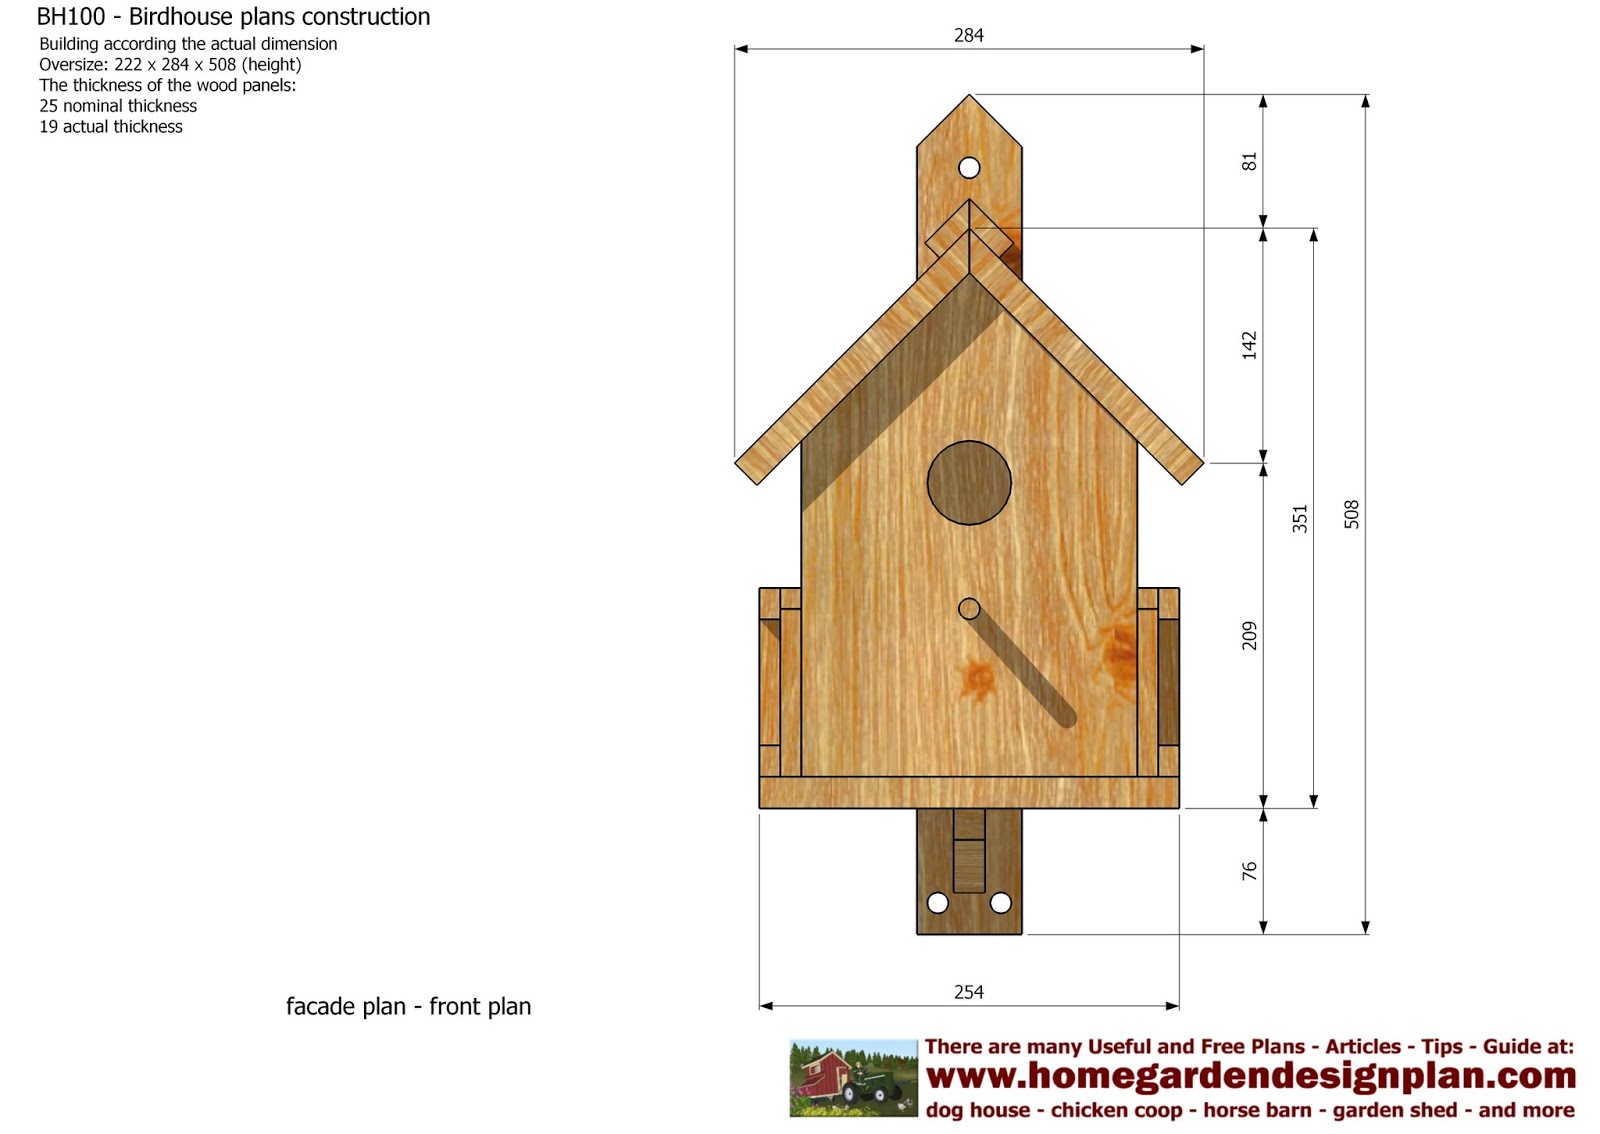 home-garden-plans-bh100-bird-house-plans-construction-bird-house